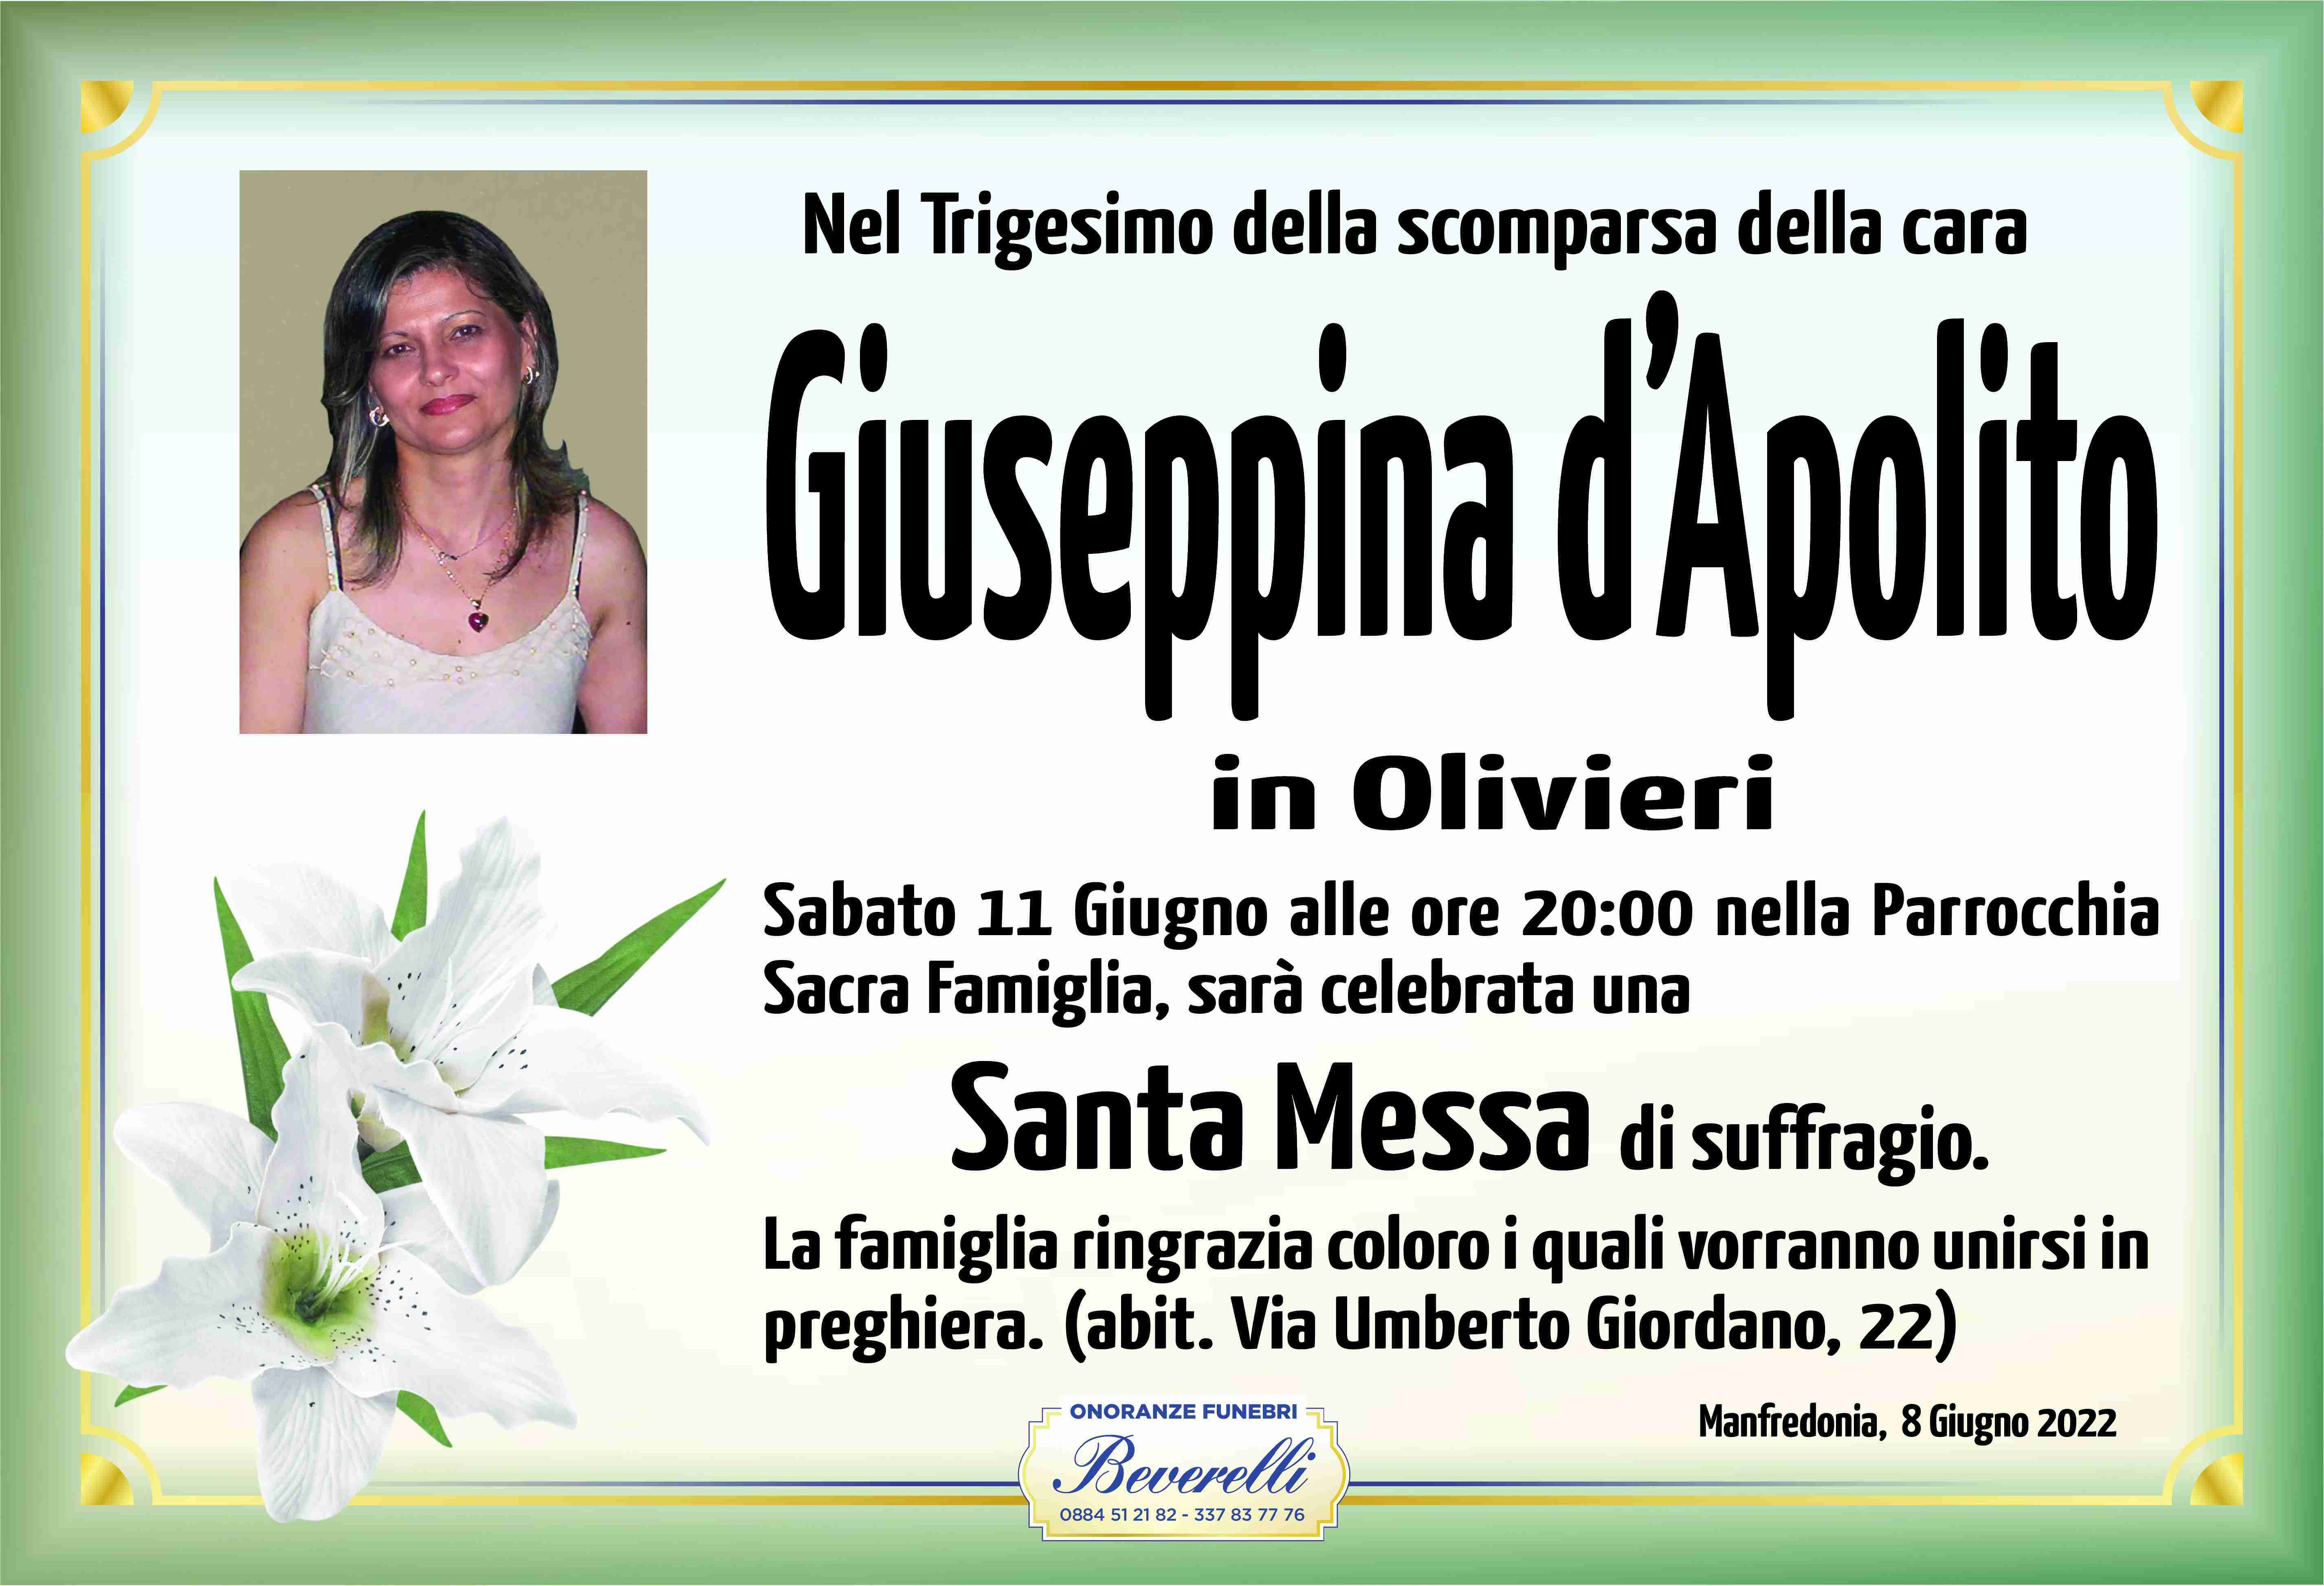 Giuseppina D'Apolito